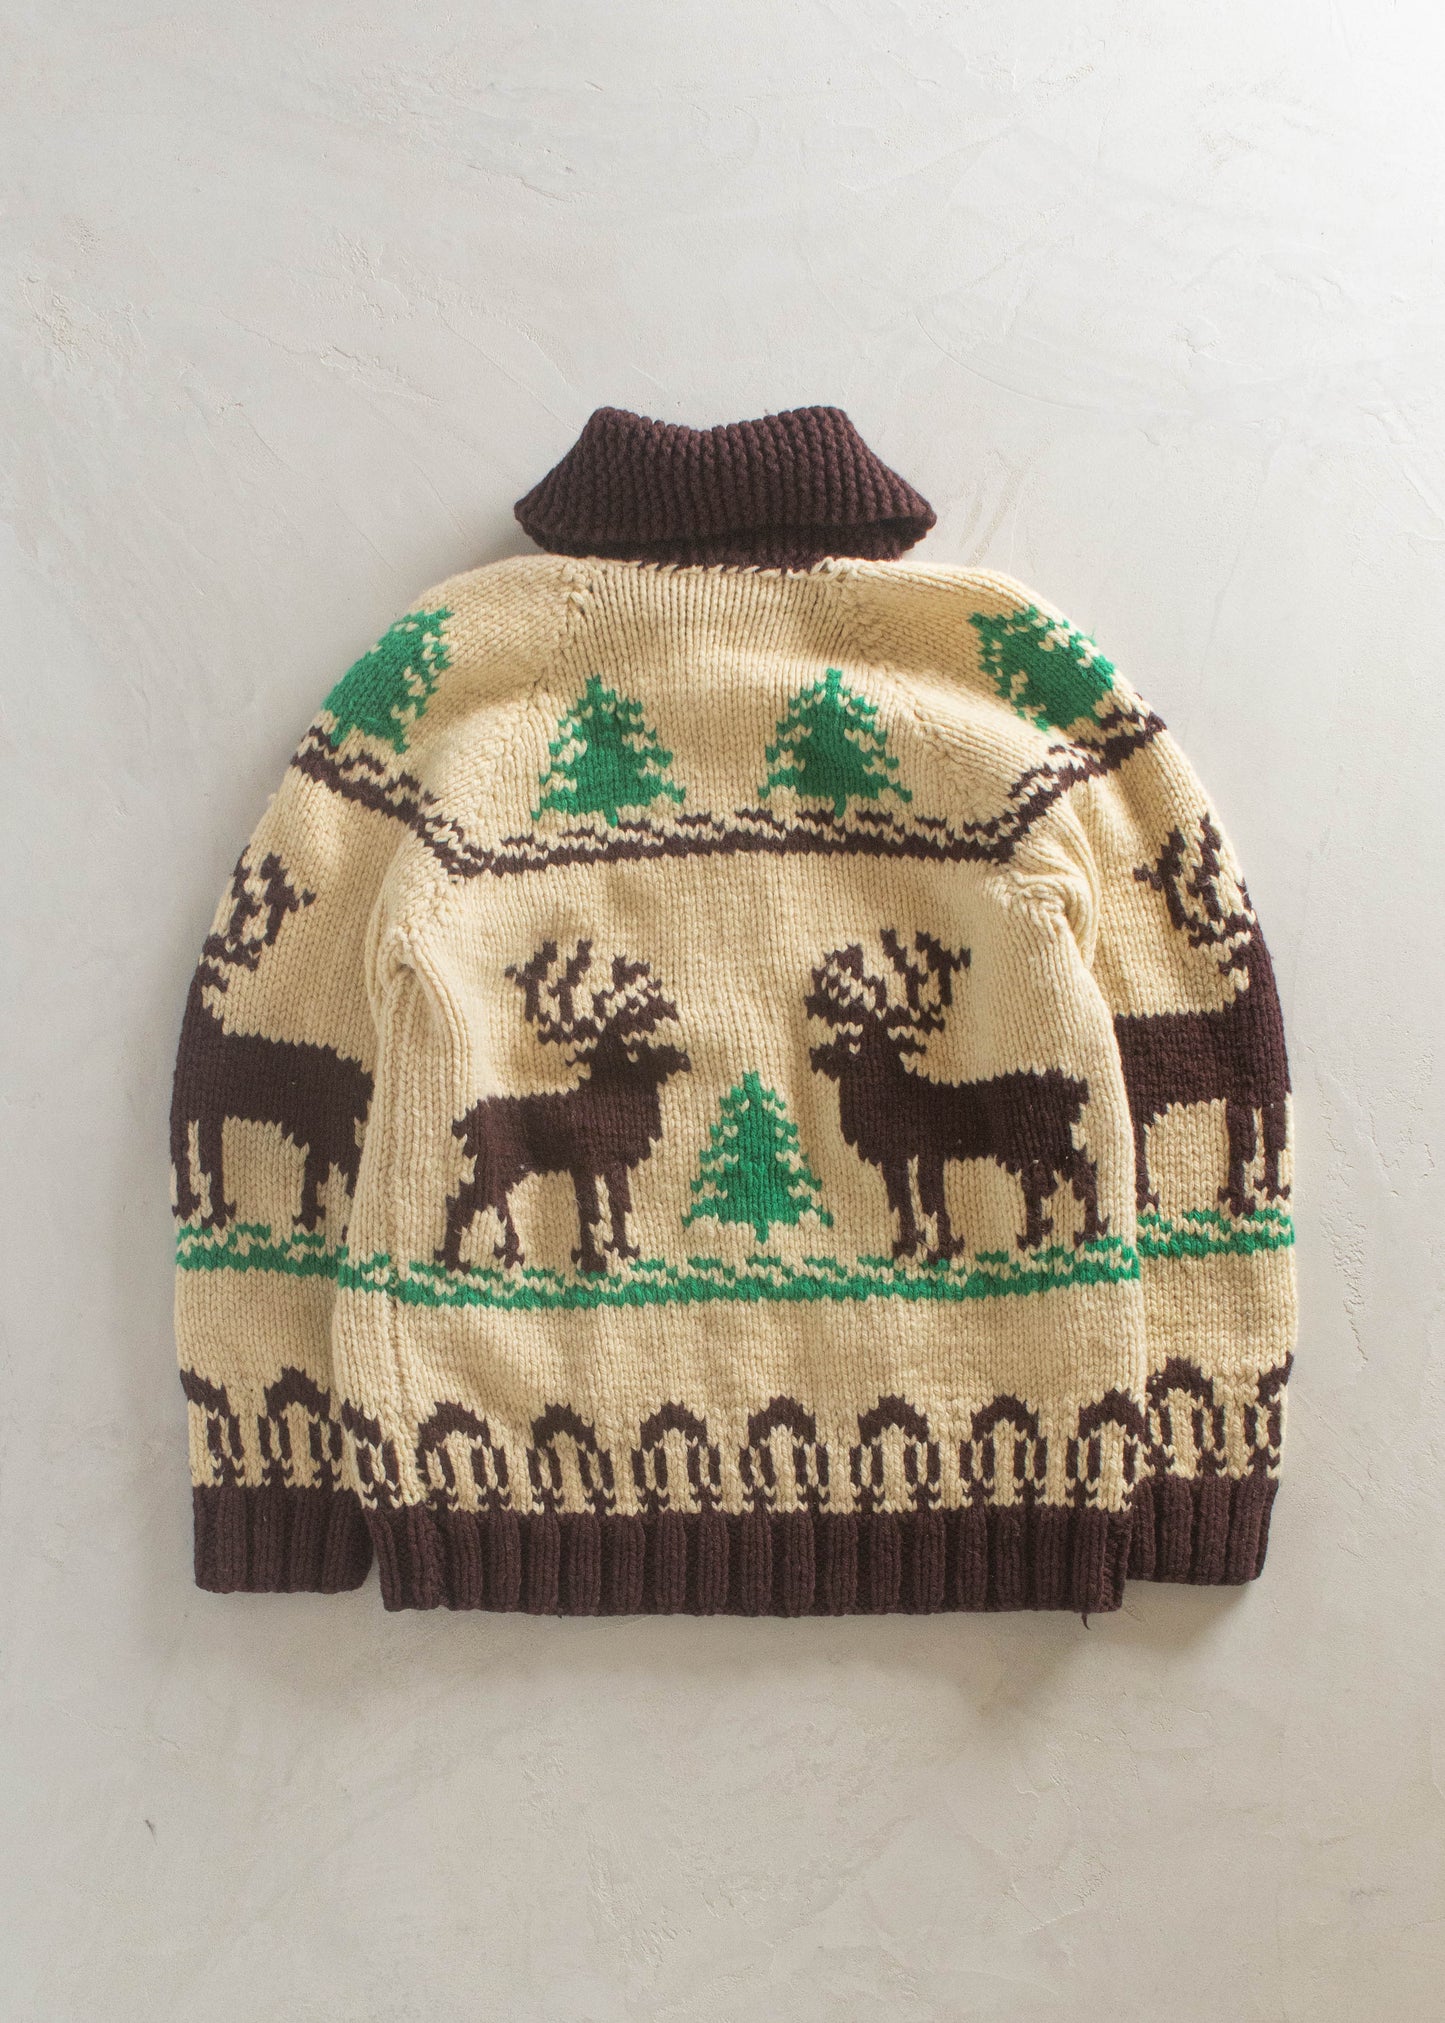 1980s Deer Pattern Cowichan Style Wool Cardigan Size L/XL